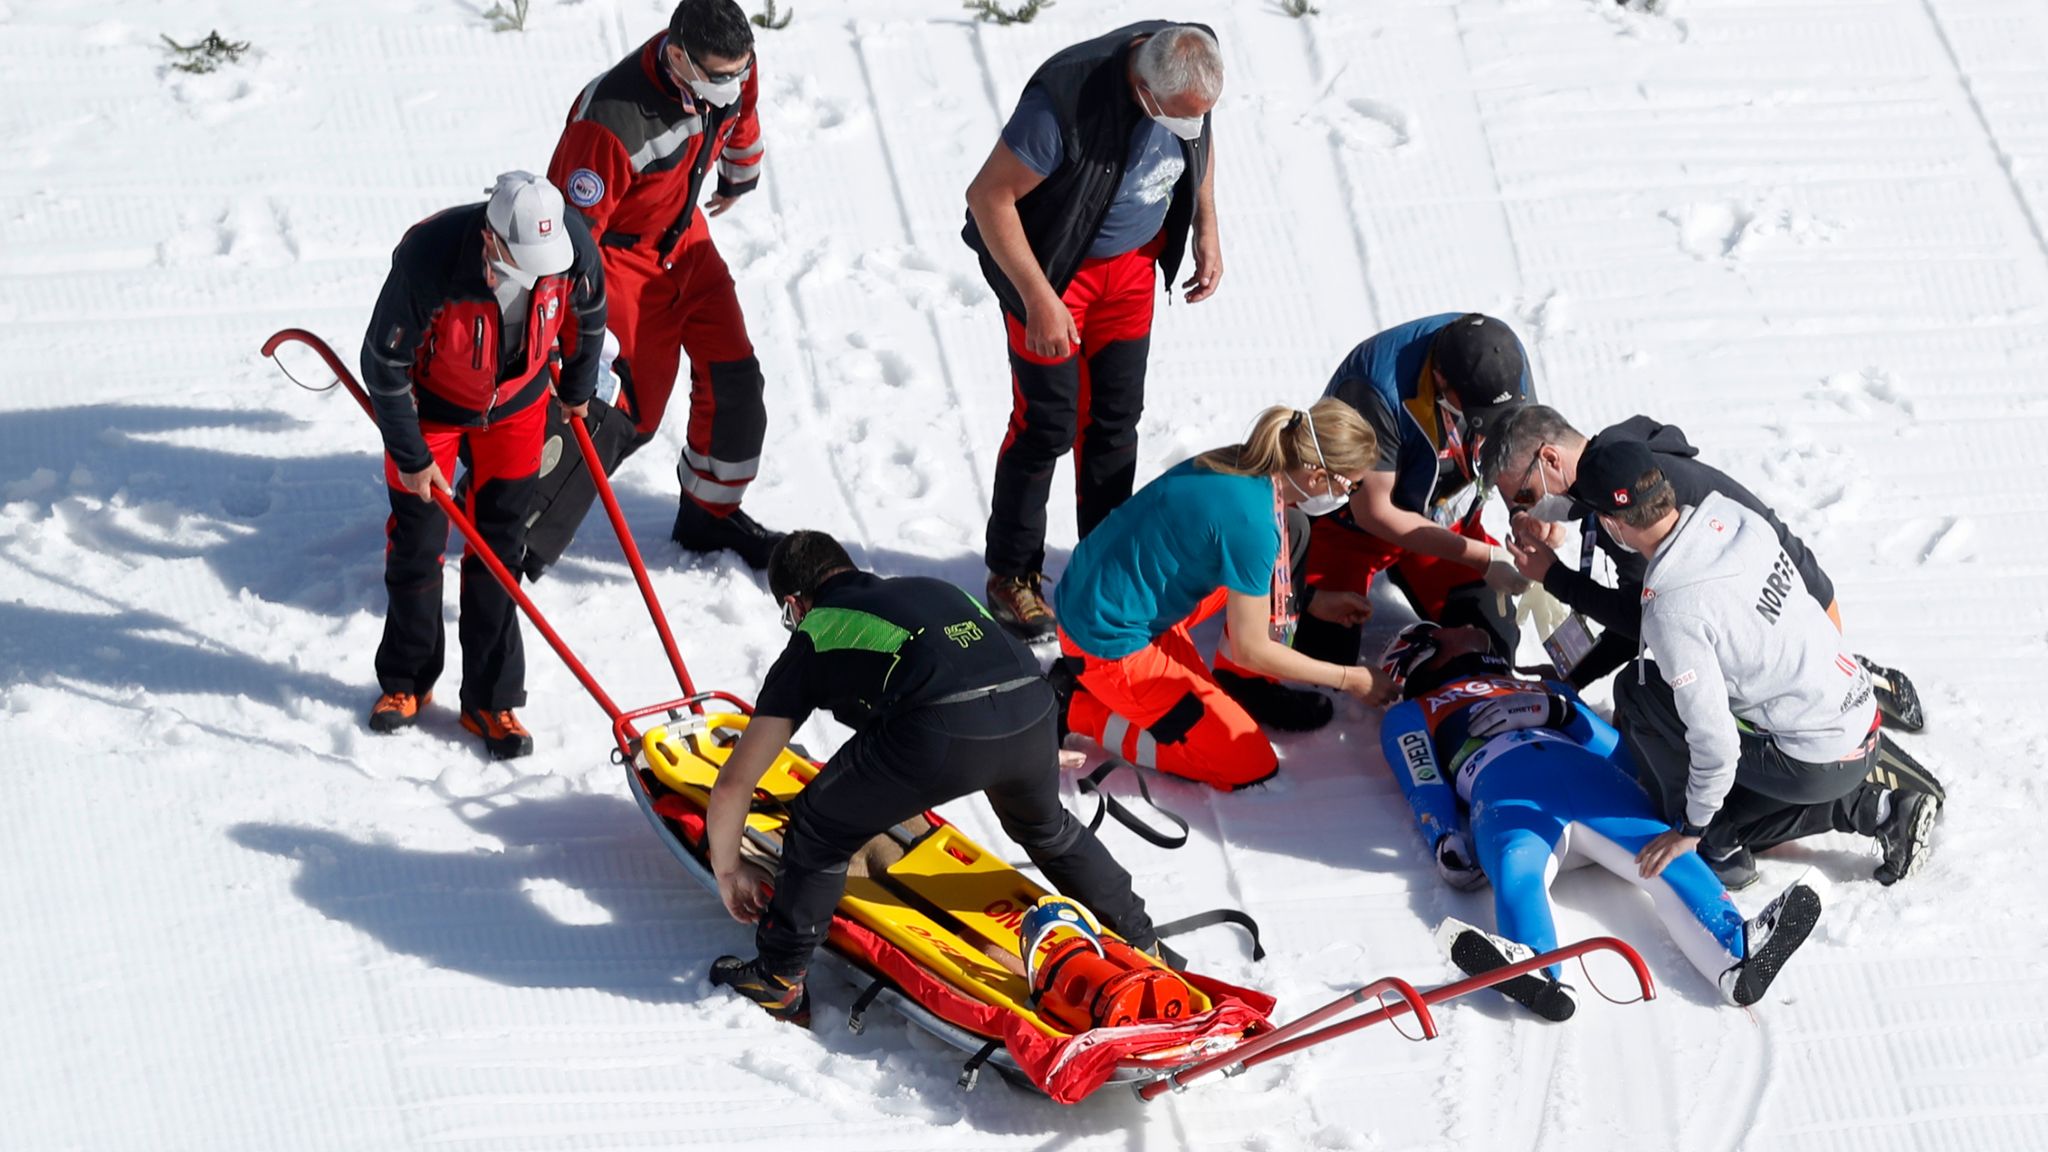 Упавший лыжник. Даниэль Андре Танде падение. Командные лыжи. Падение на лыжах.